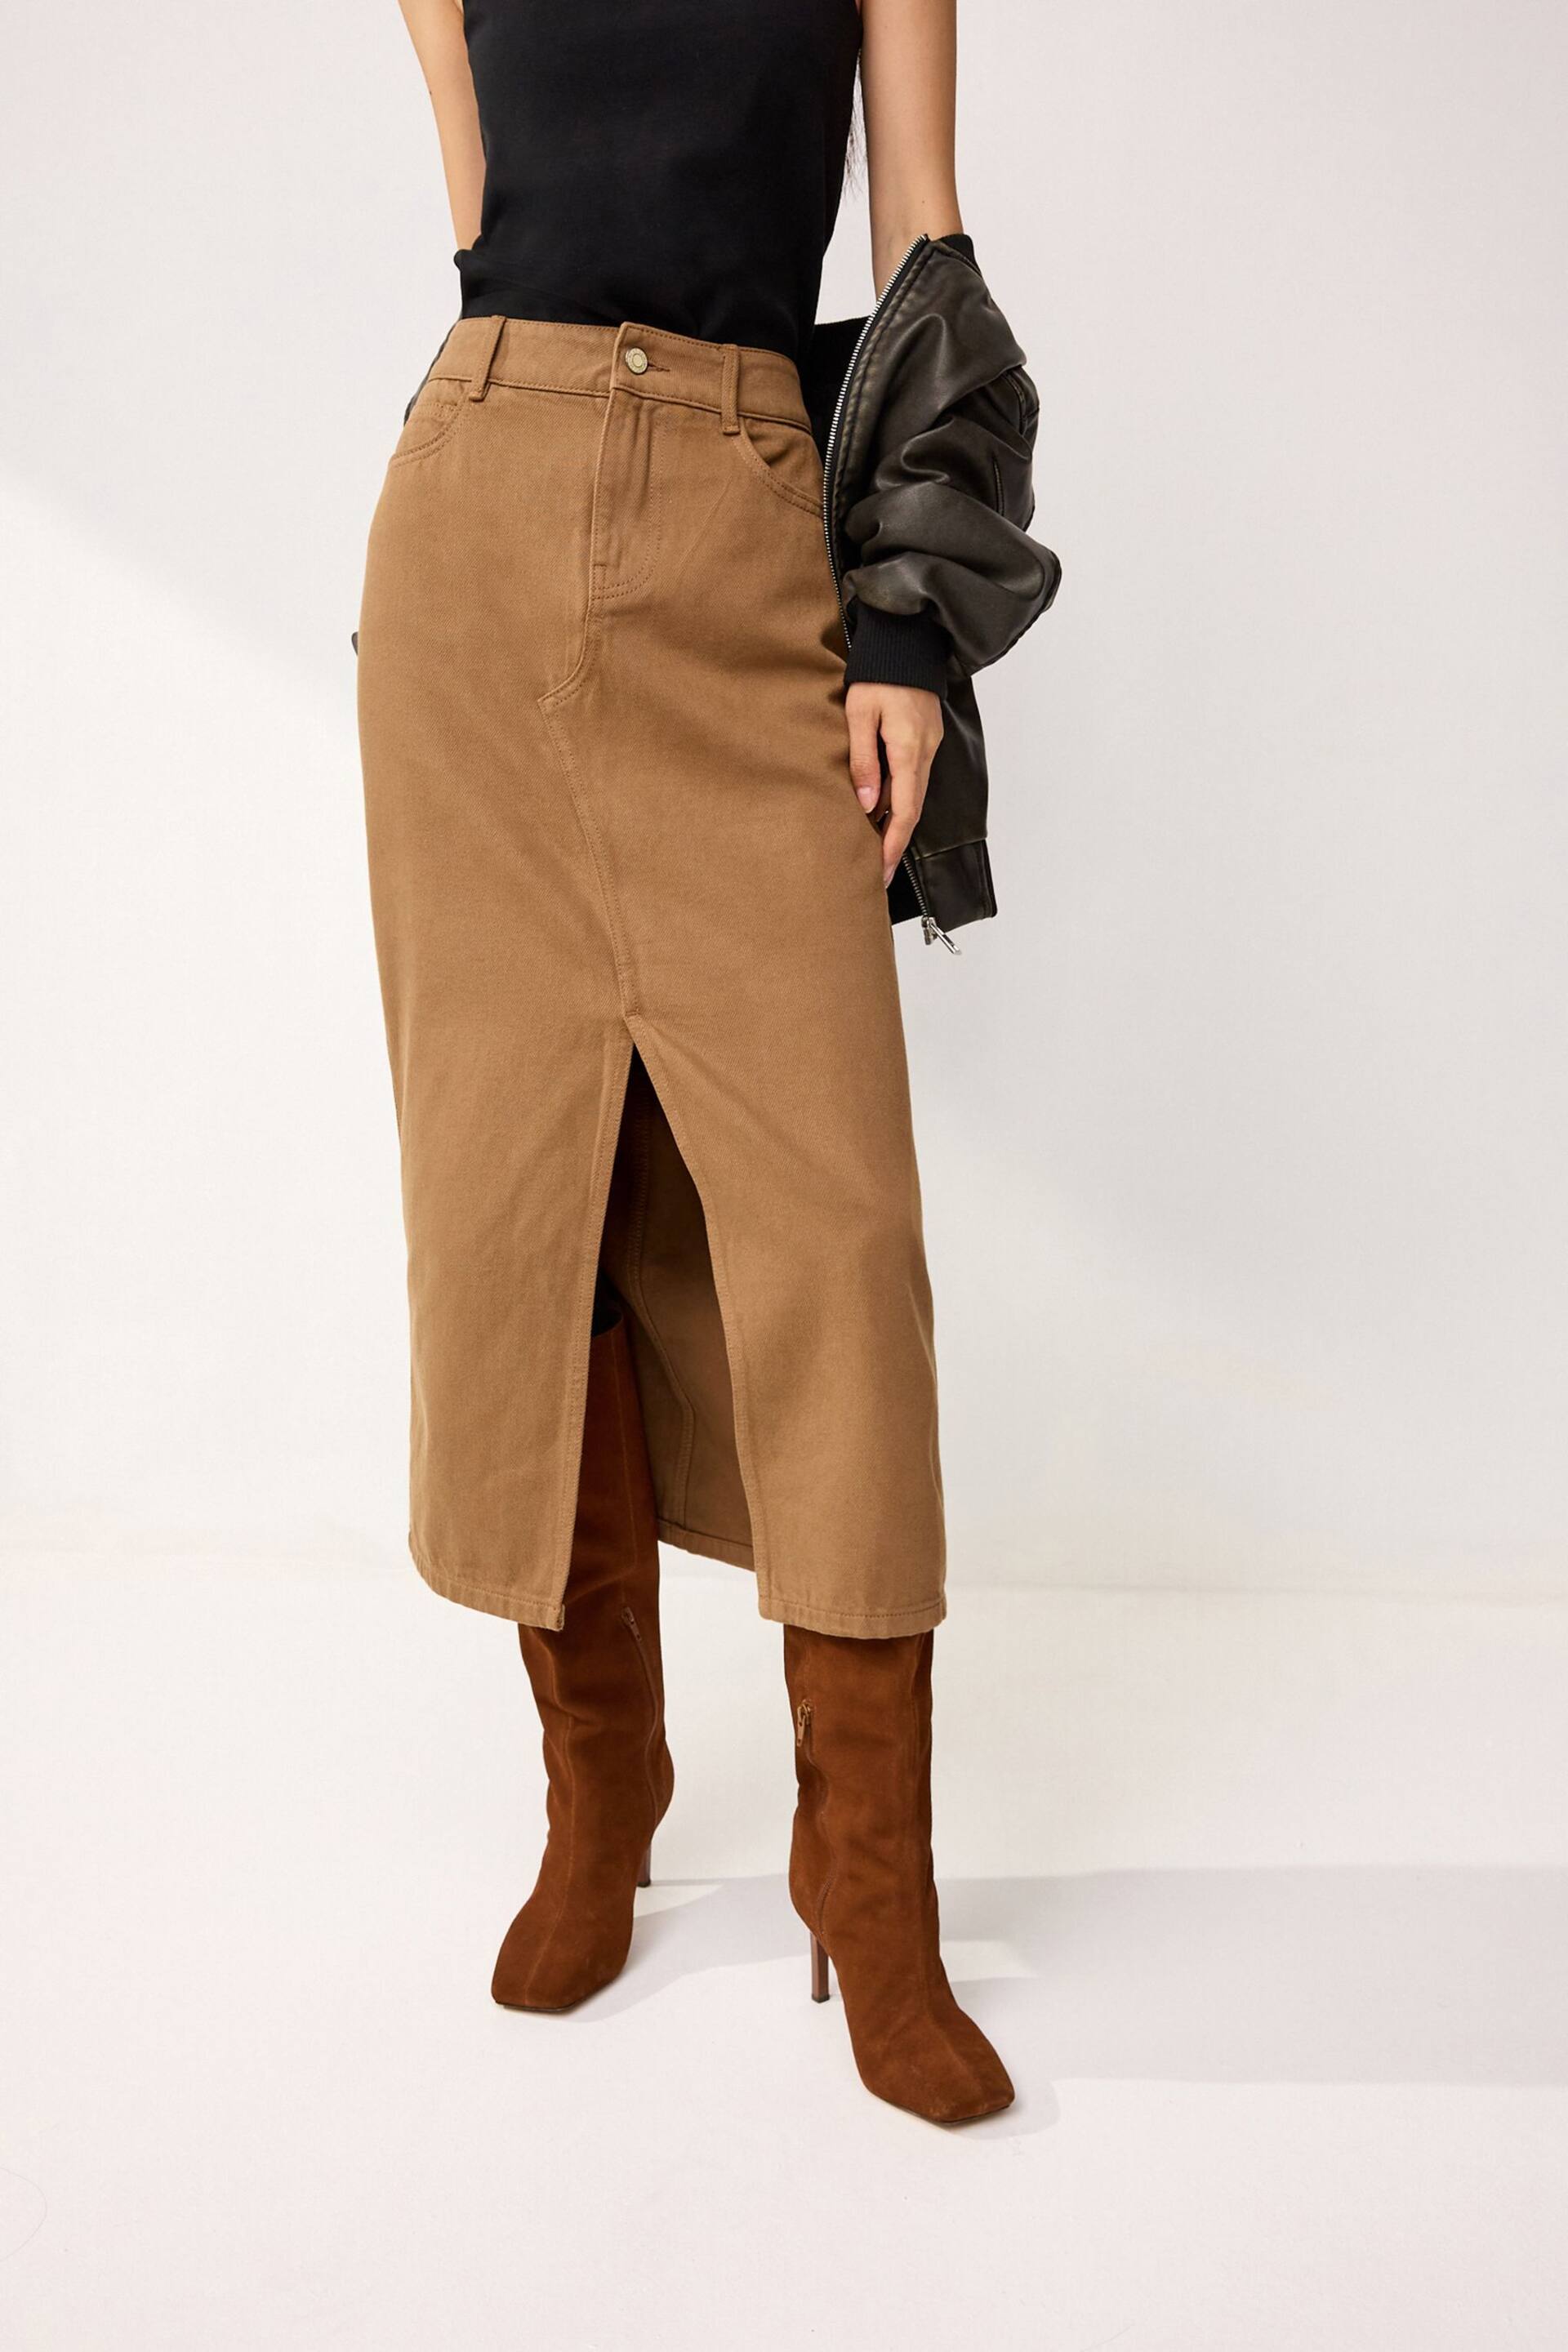 Rust Brown Denim Maxi Skirt - Image 2 of 6